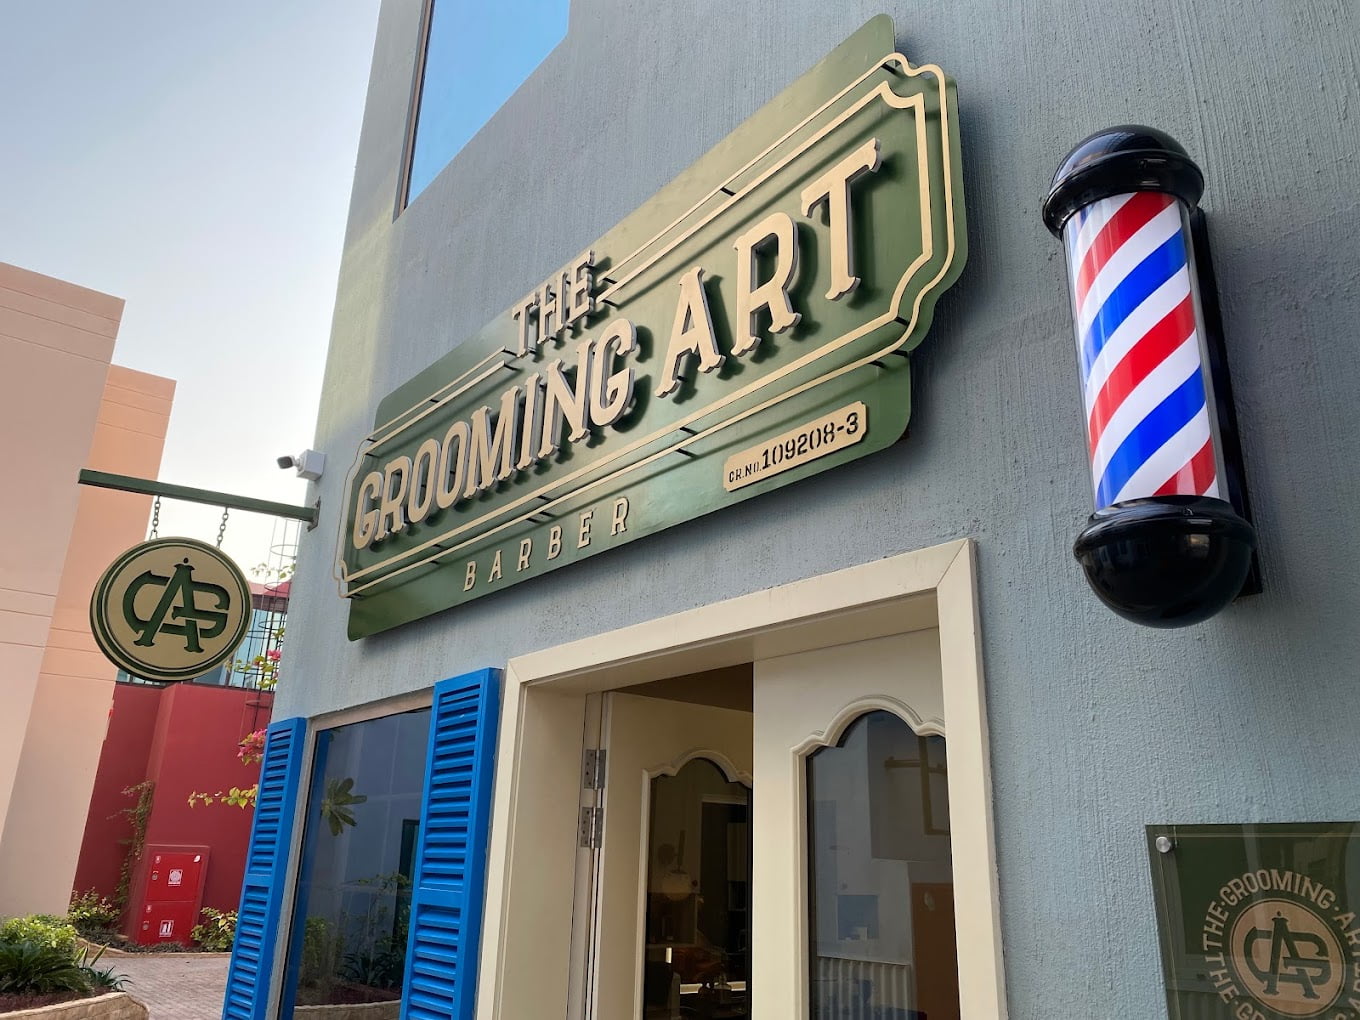 The Grooming Art Barber Bahrain